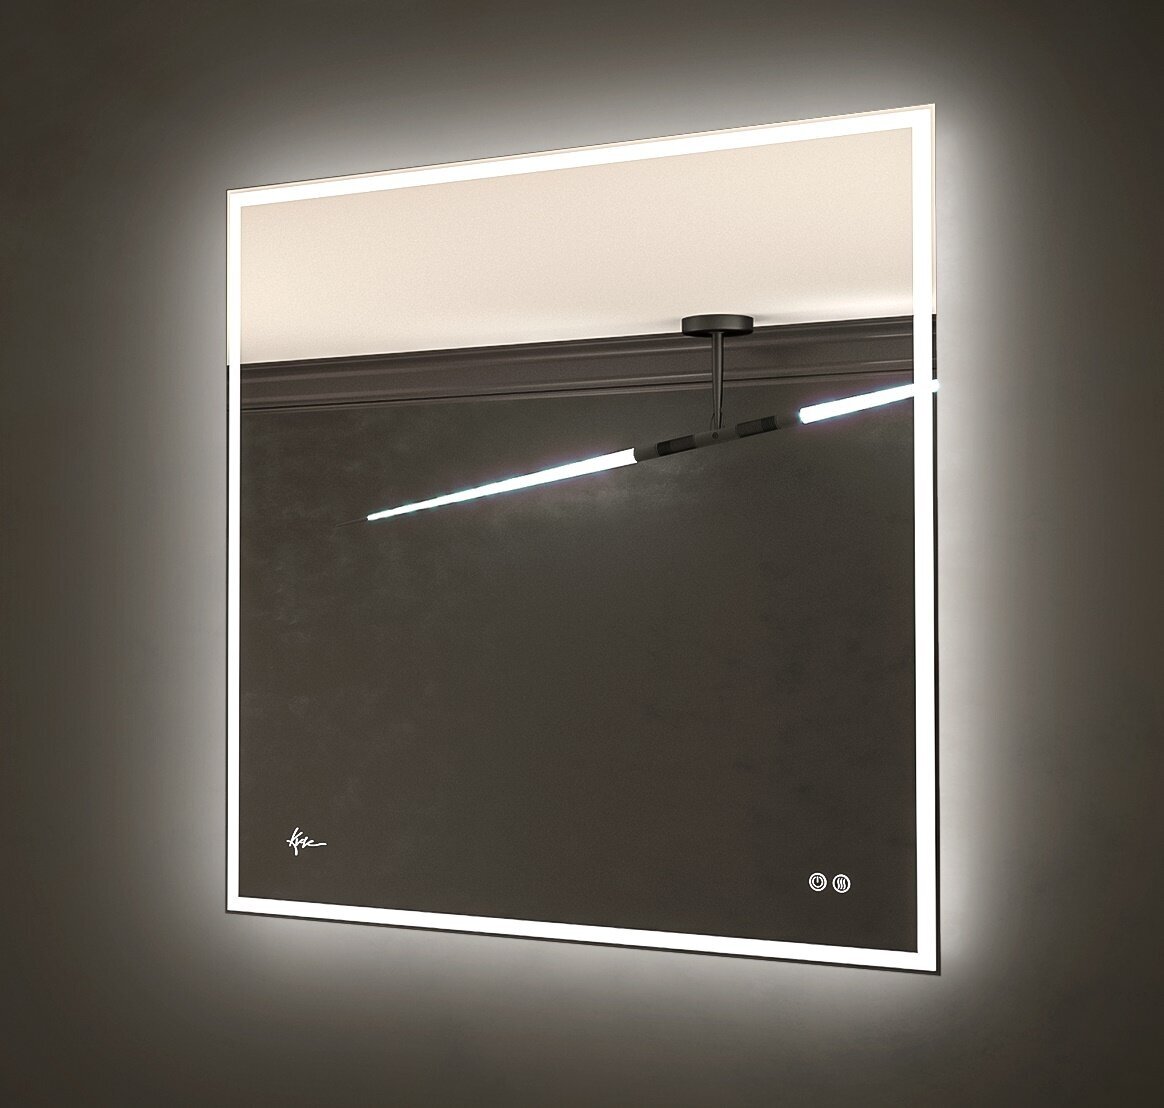 Зеркало с лед подсветкой Neapol 70*80 см влагостойкое зеркало в ванную комнату с сенсорным выключателем LED подсветки и функцией антизапотевания